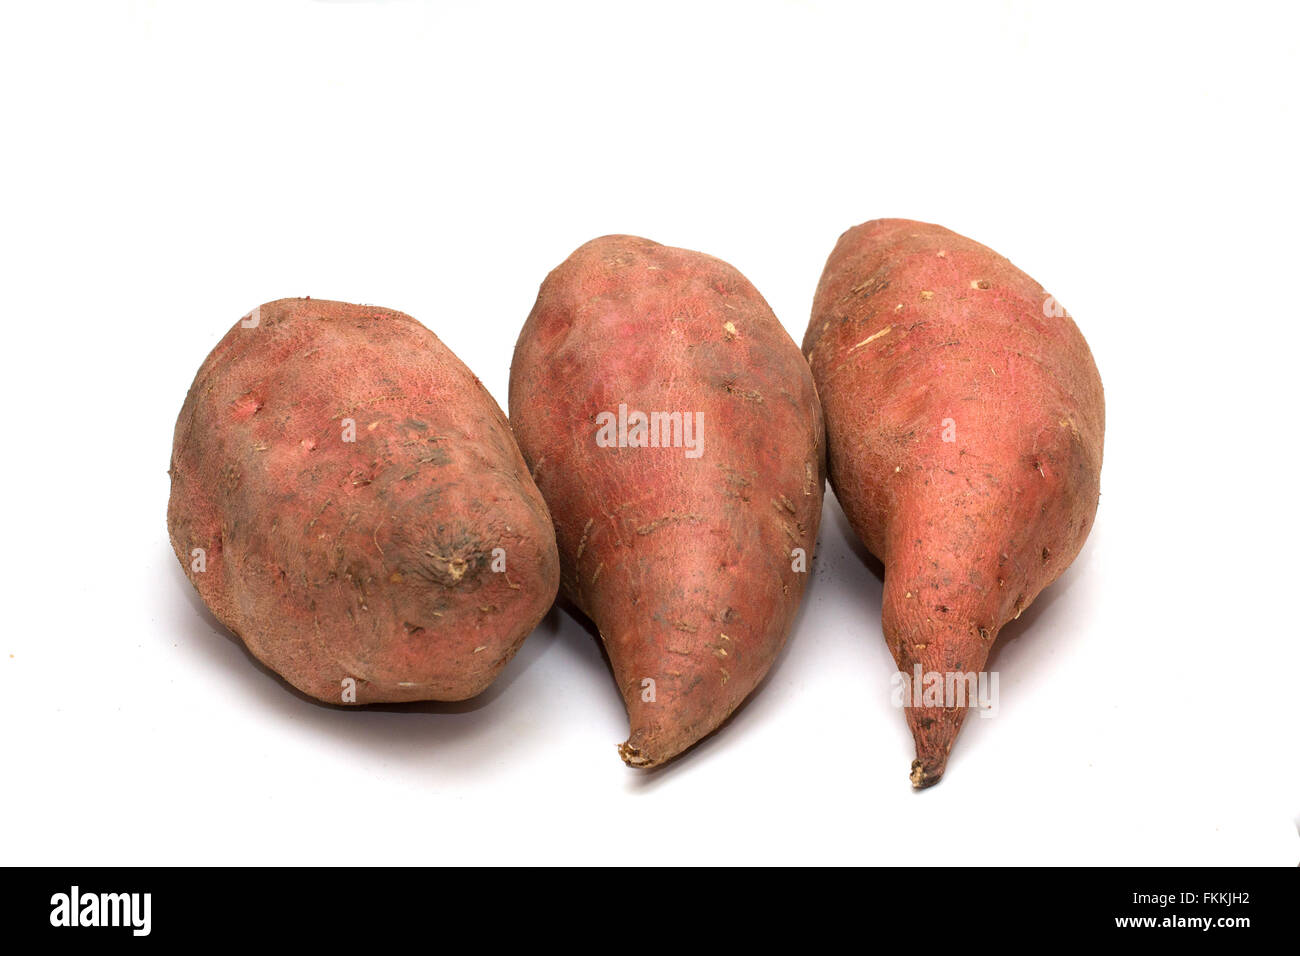 La patate douce (Ipomoea batatas) est un grand, au goût sucré, de féculents, de légumes racines tubéreuses. C'est un aliment de base dans certaines régions d'Afrique et d'Asie. Banque D'Images